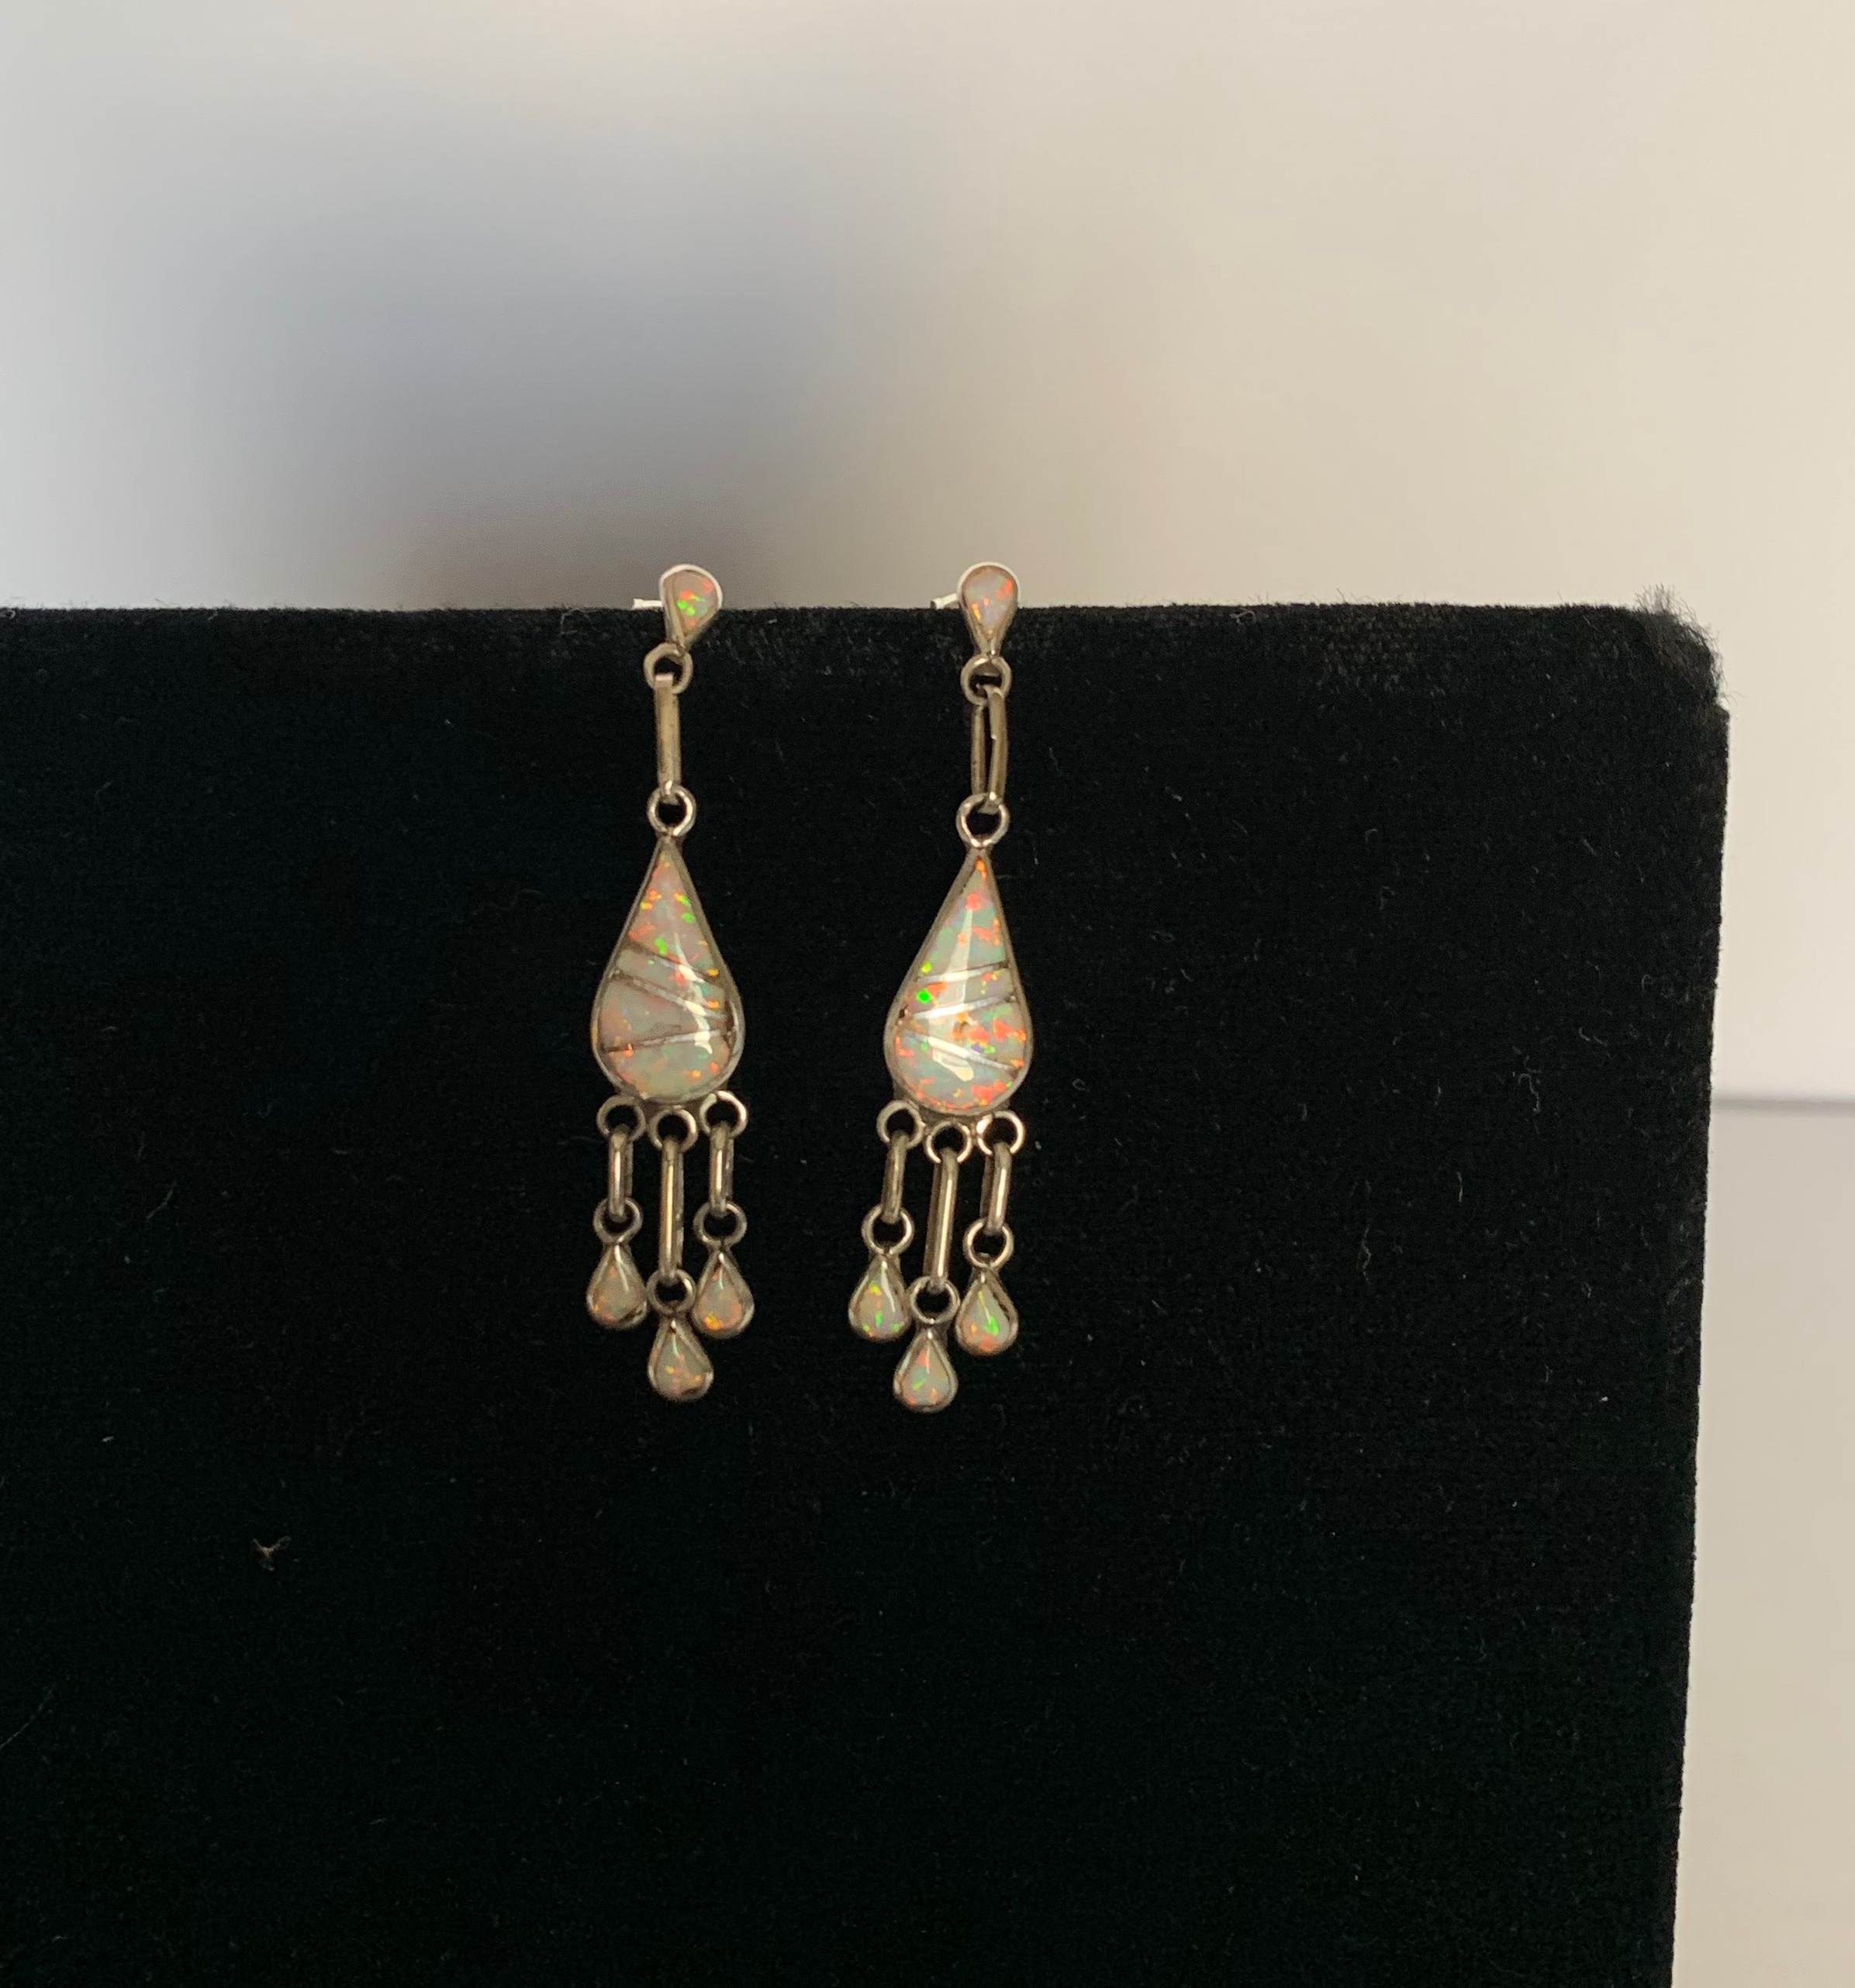 Opal Dangling Earrings